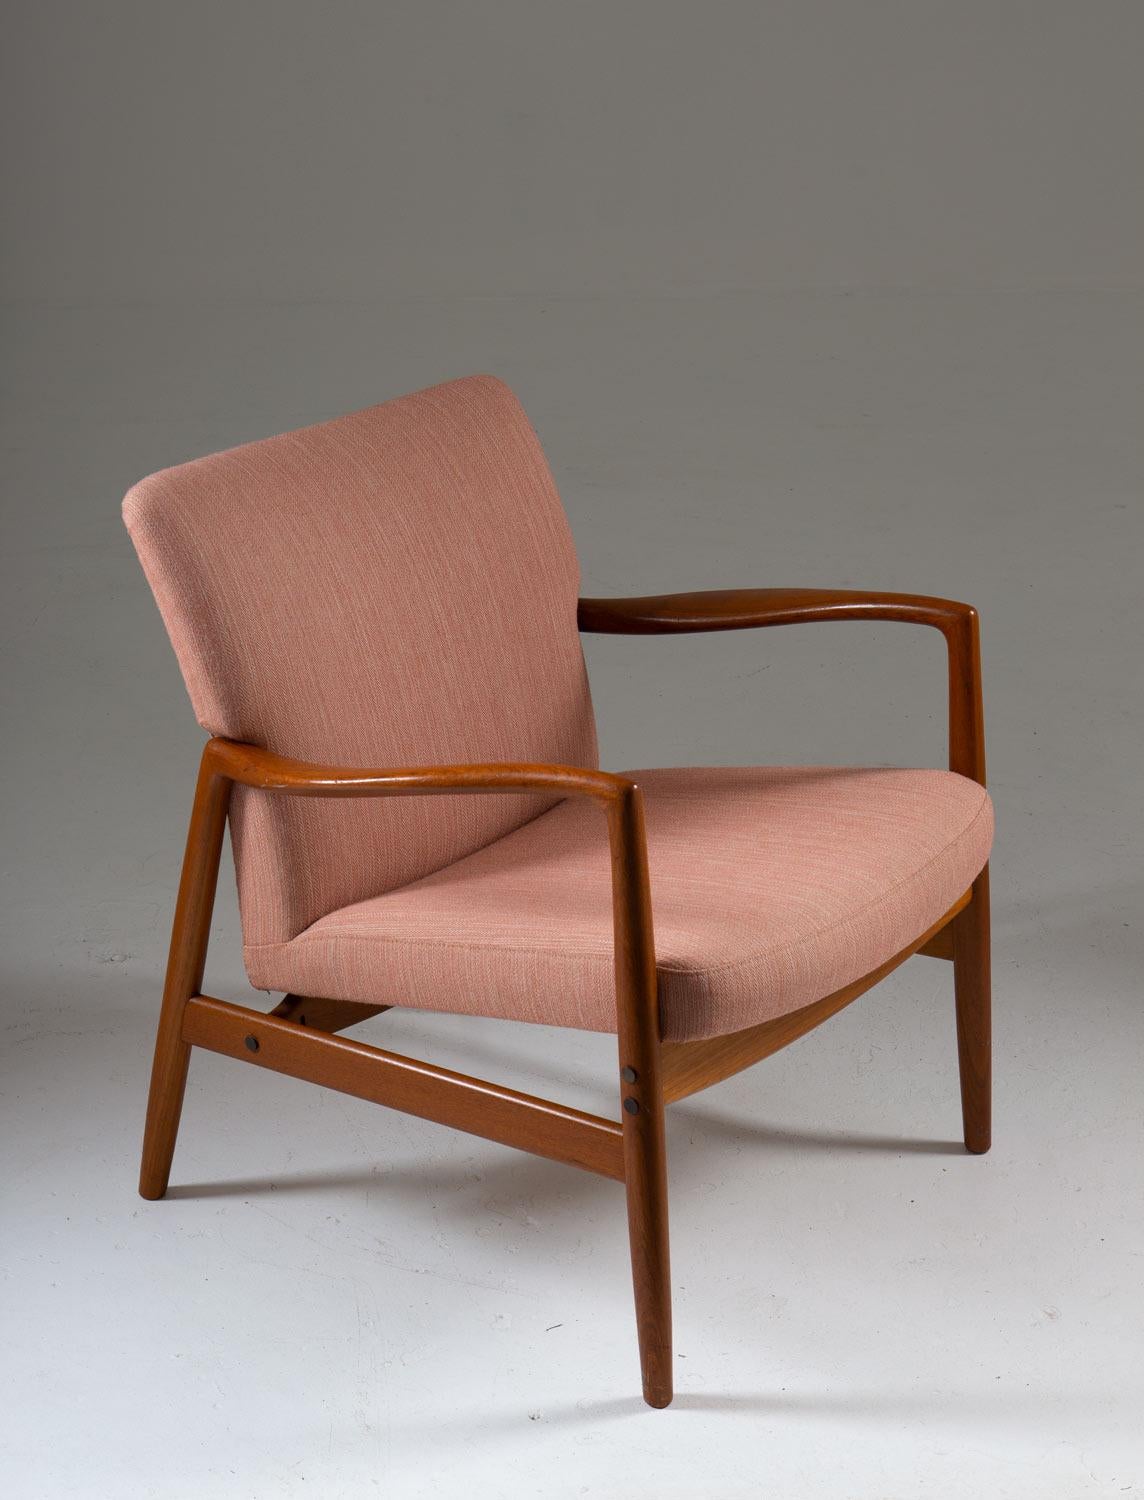 Seltener Mid-Century Modern Lounge Chair von Bertil Fridhagen für Bodafors (Schweden).
Dieser Stuhl hat ein zeitlos klassisches Design. Das Gestell besteht aus Teakholz und hält die Sitzfläche und die Rückenlehne, die mit einem rosa Wollstoff